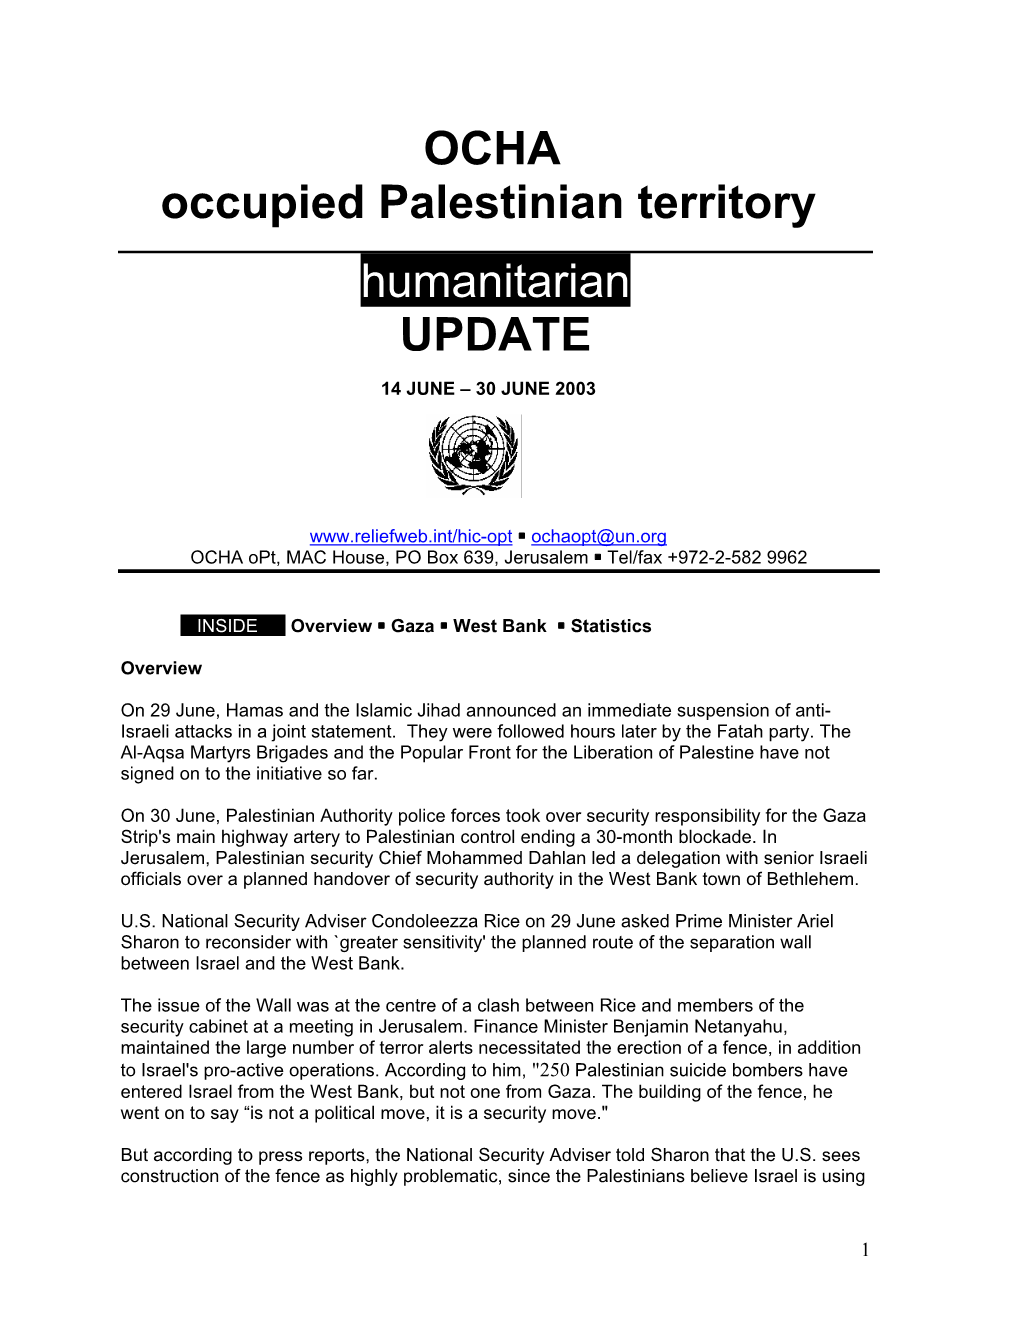 OCHA Occupied Palestinian Territory Humanitarian UPDATE